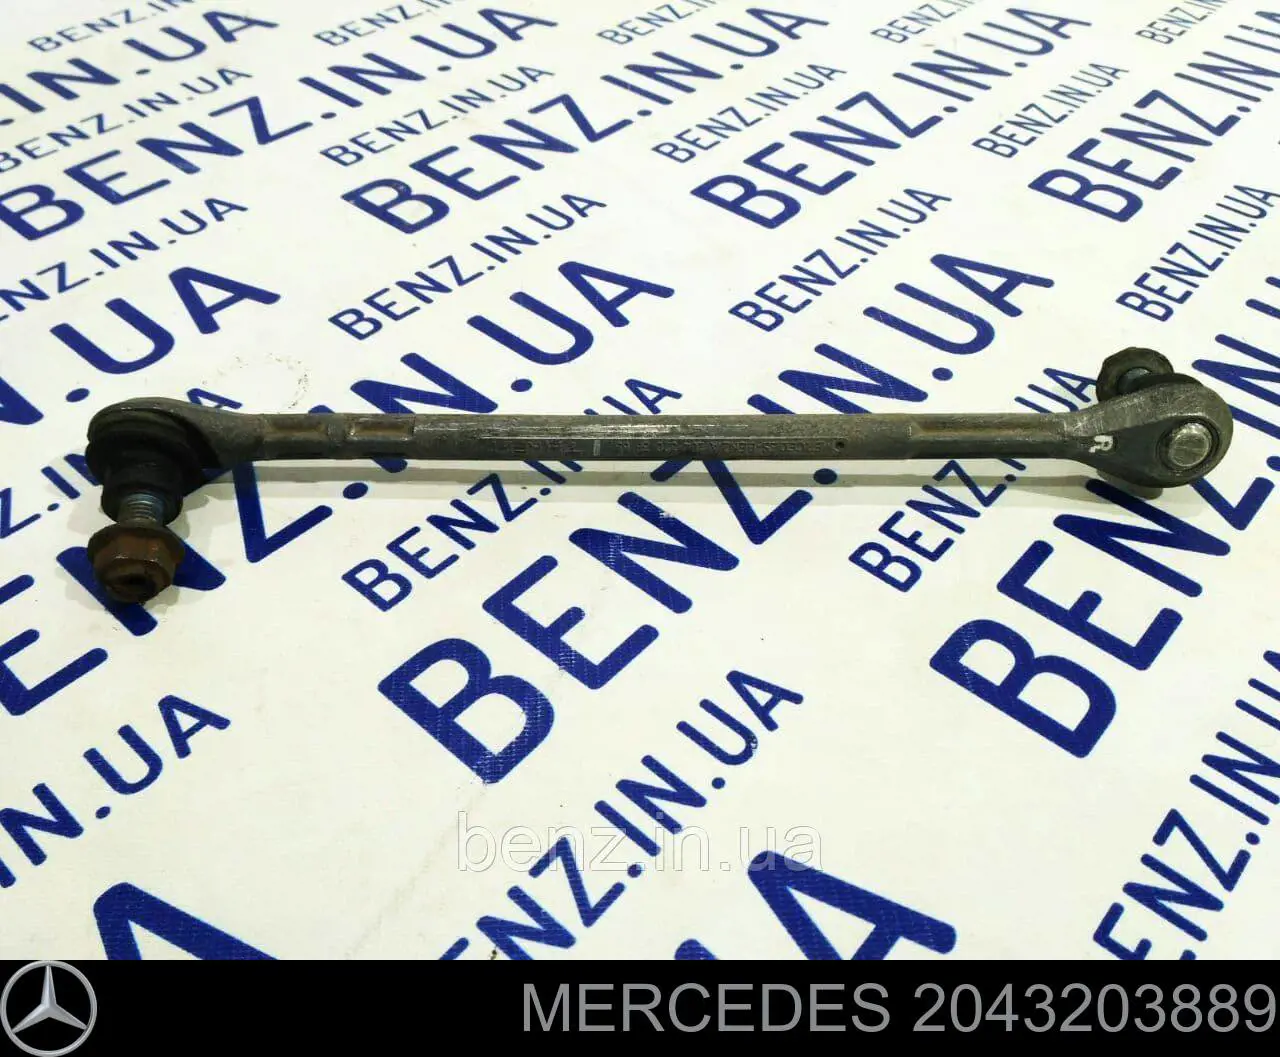 2043203889 Mercedes стойка стабилизатора переднего правая